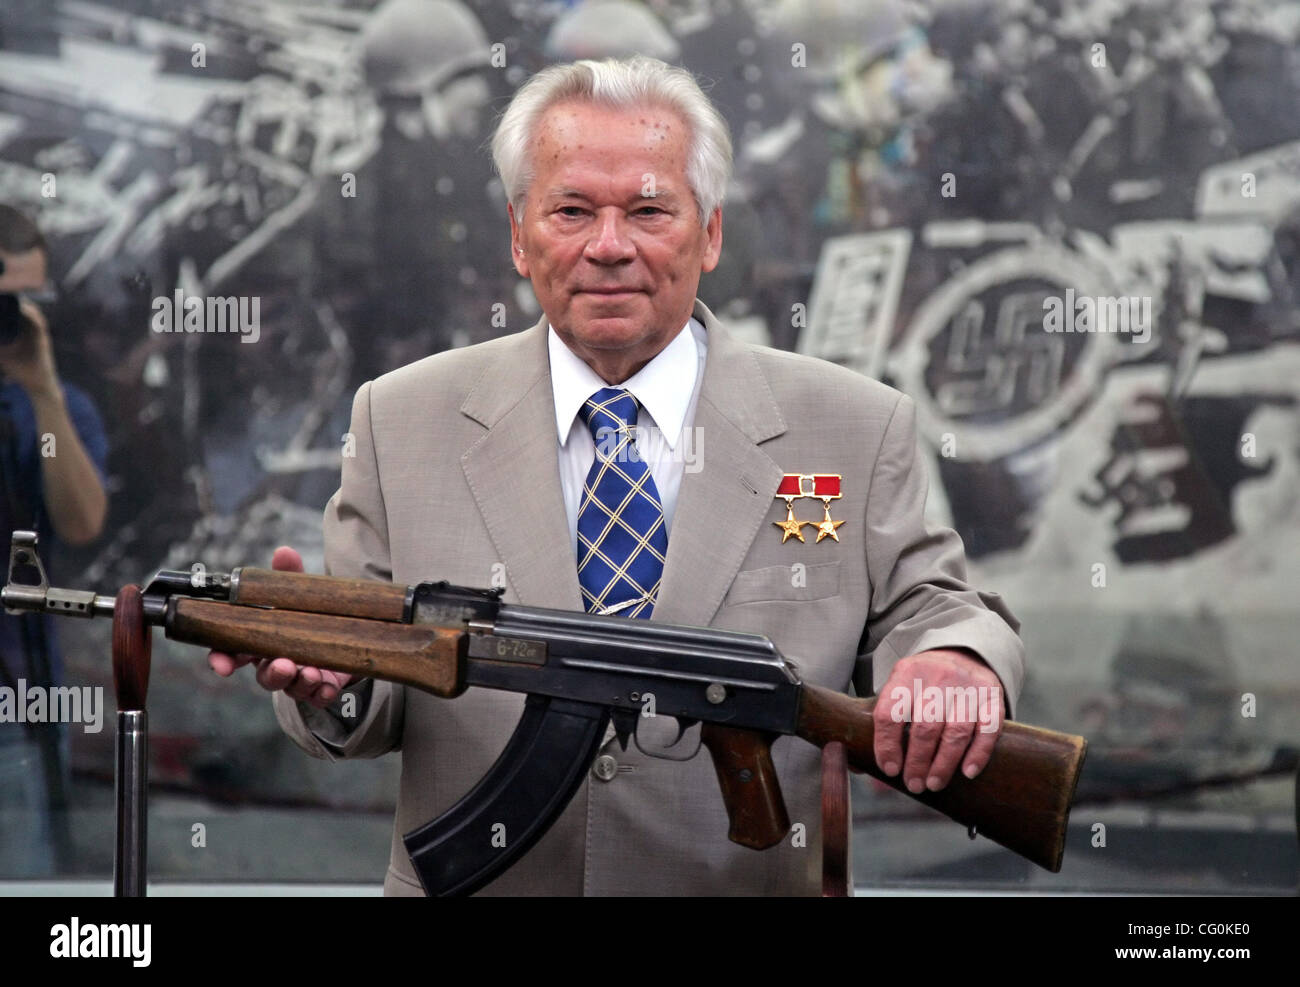 Legendäre russische Gewehr-Maker Mikhail Kalashnikov behandelnden Feier  Zeremonie zum 60. Jahrestag der Einführung des AK-47 Kalaschnikow. Mikhail  Kalashnikov mit seiner legendären Waffe Stockfotografie - Alamy